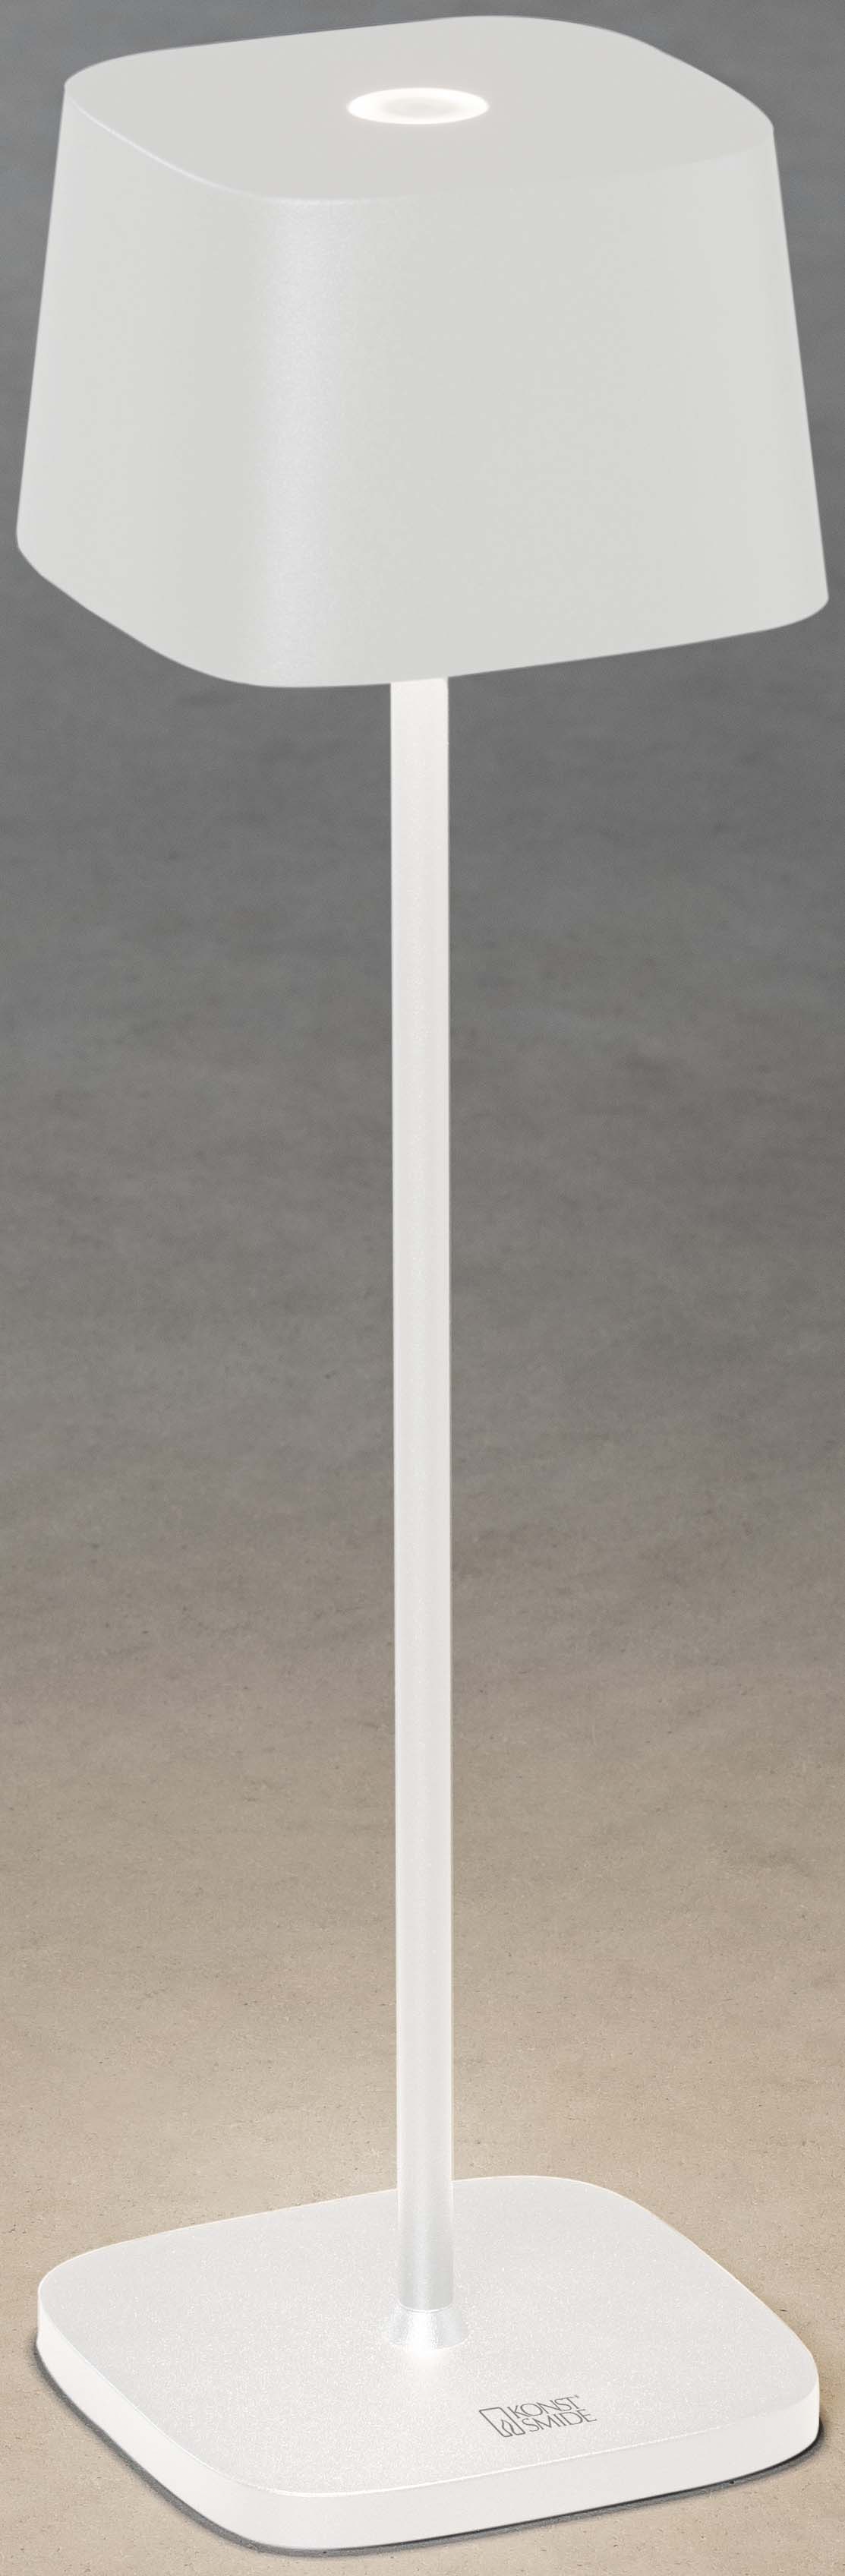 Capri weiß - LED Tischleuchte - USB aufladbar - 36x10cm